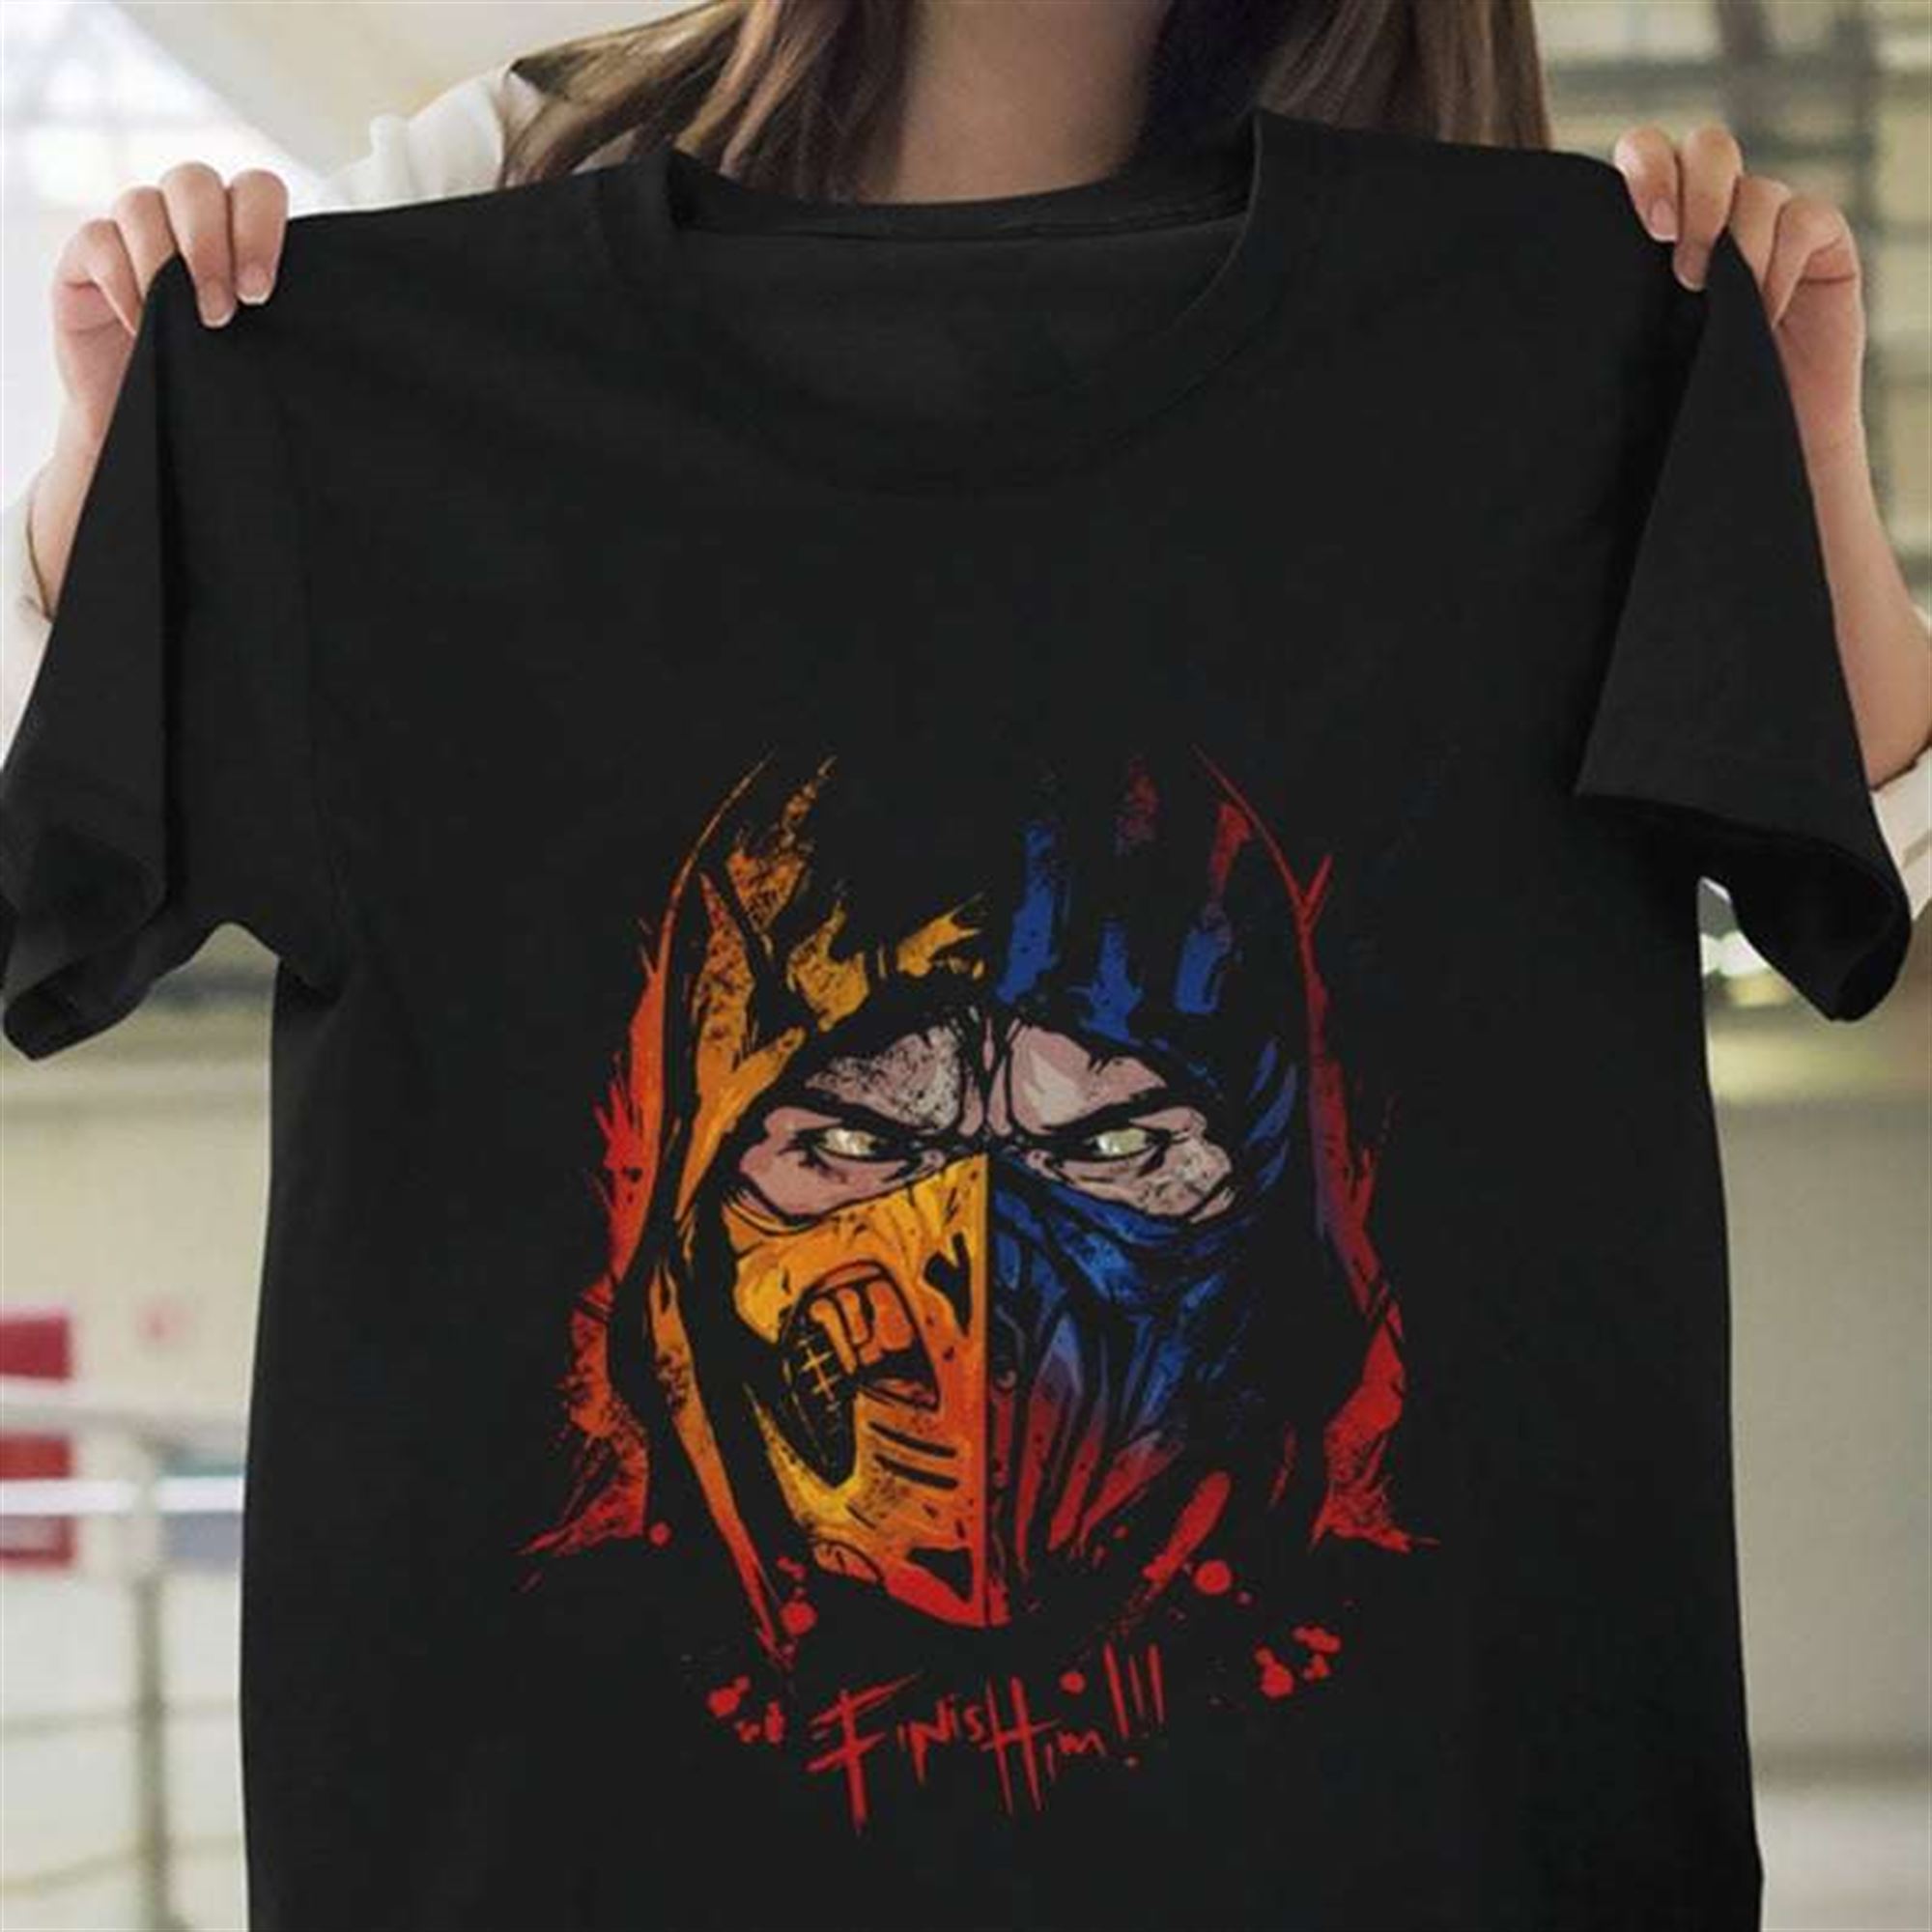 Mortal Kombat Game T-shirt Size Up To 5xl